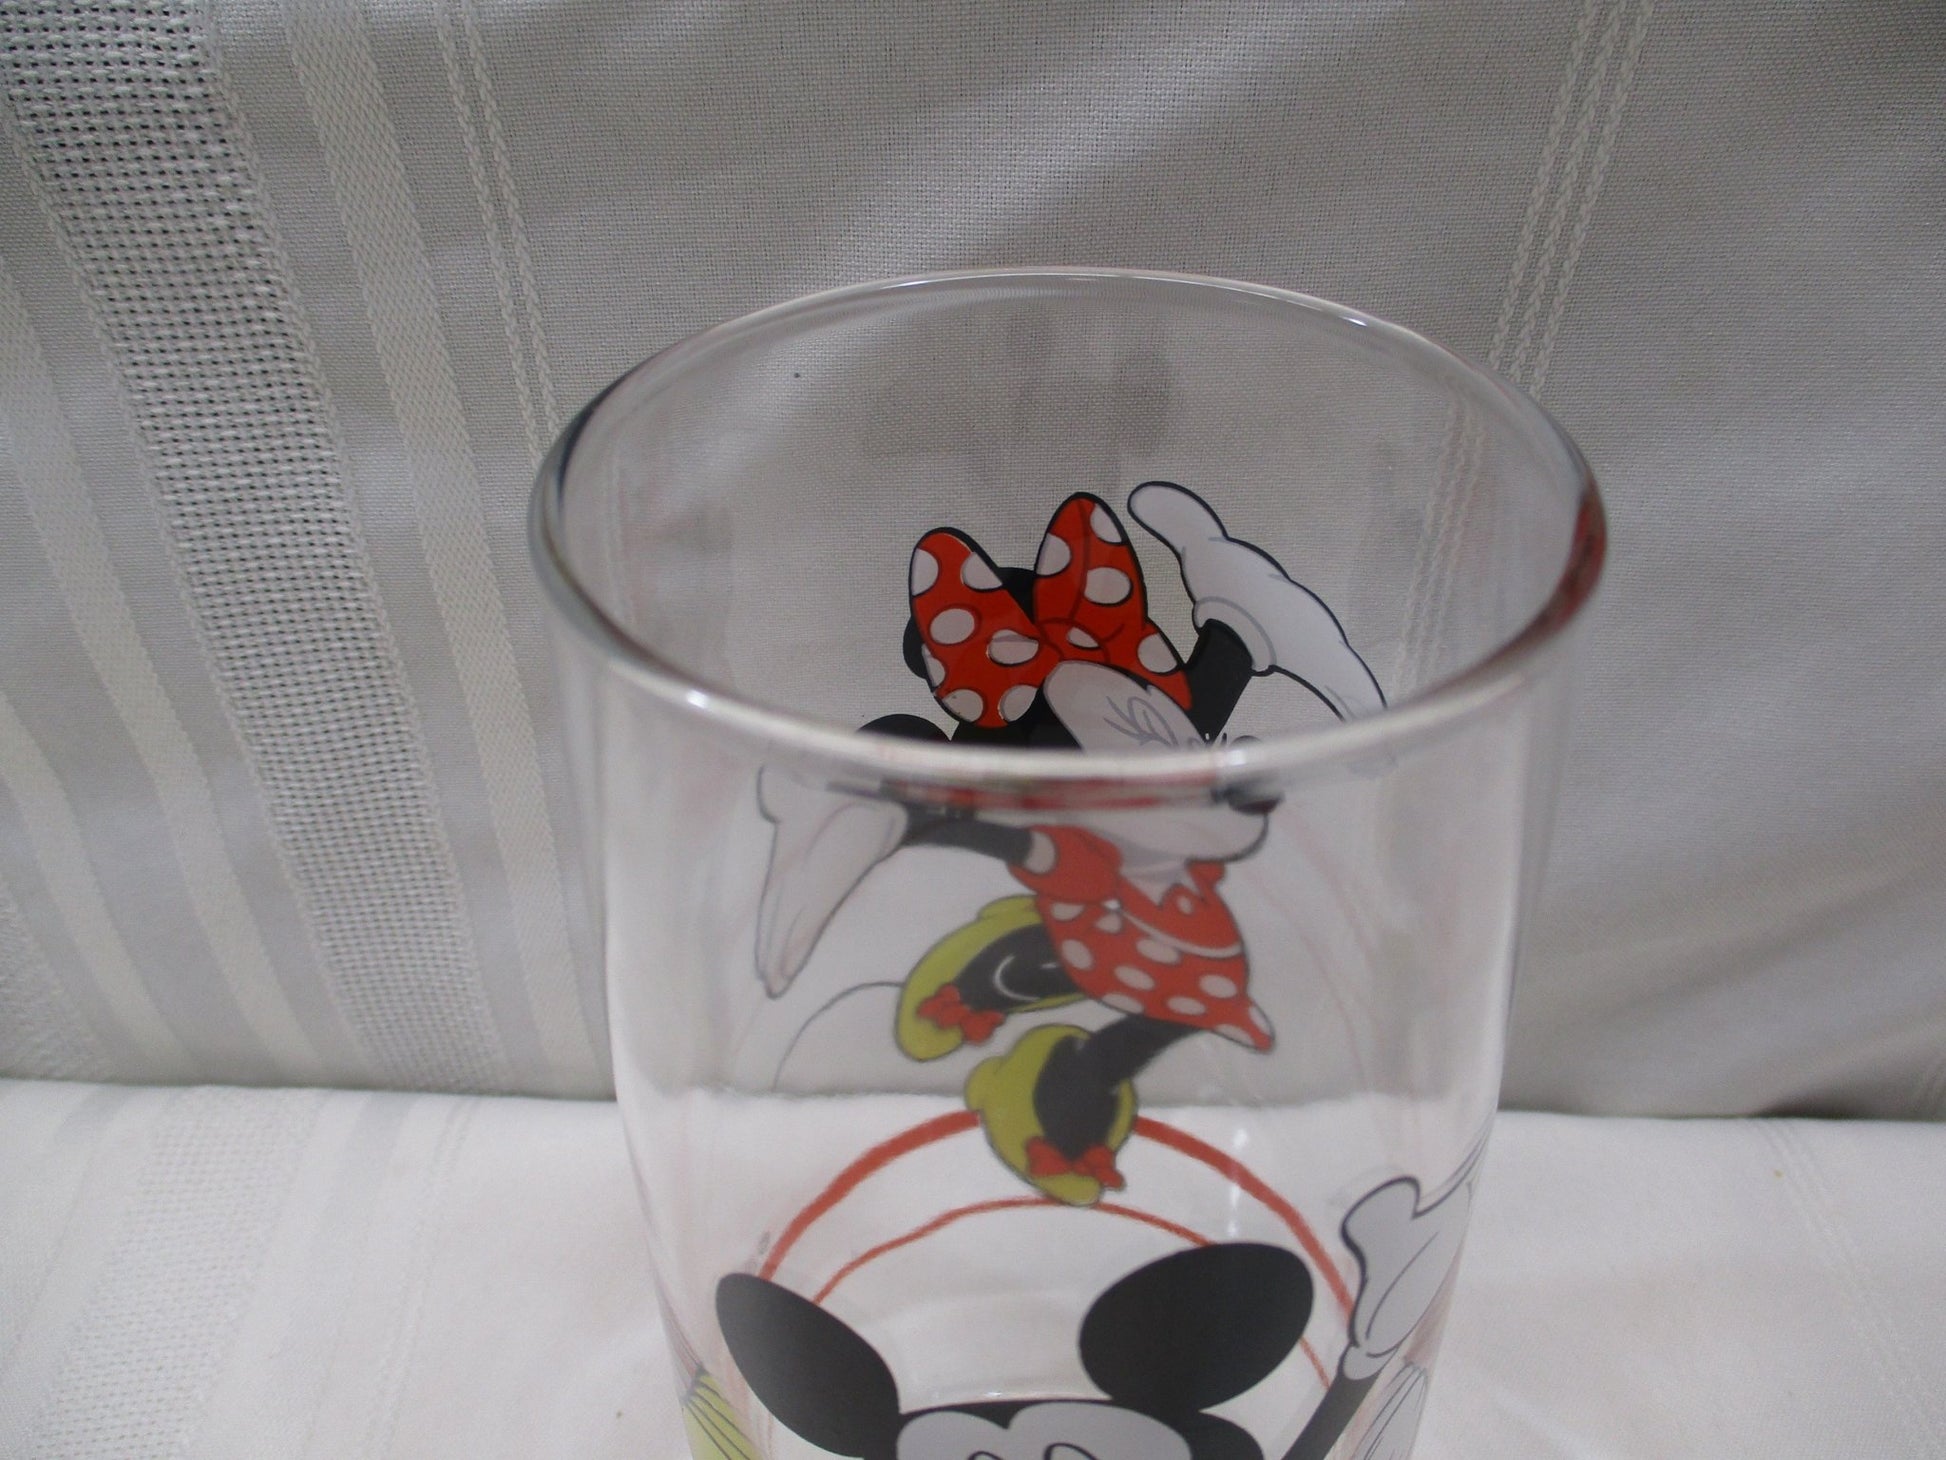 Minnie Mouse Disney Glass (74691 - Cactus Jax Unique Collectibles